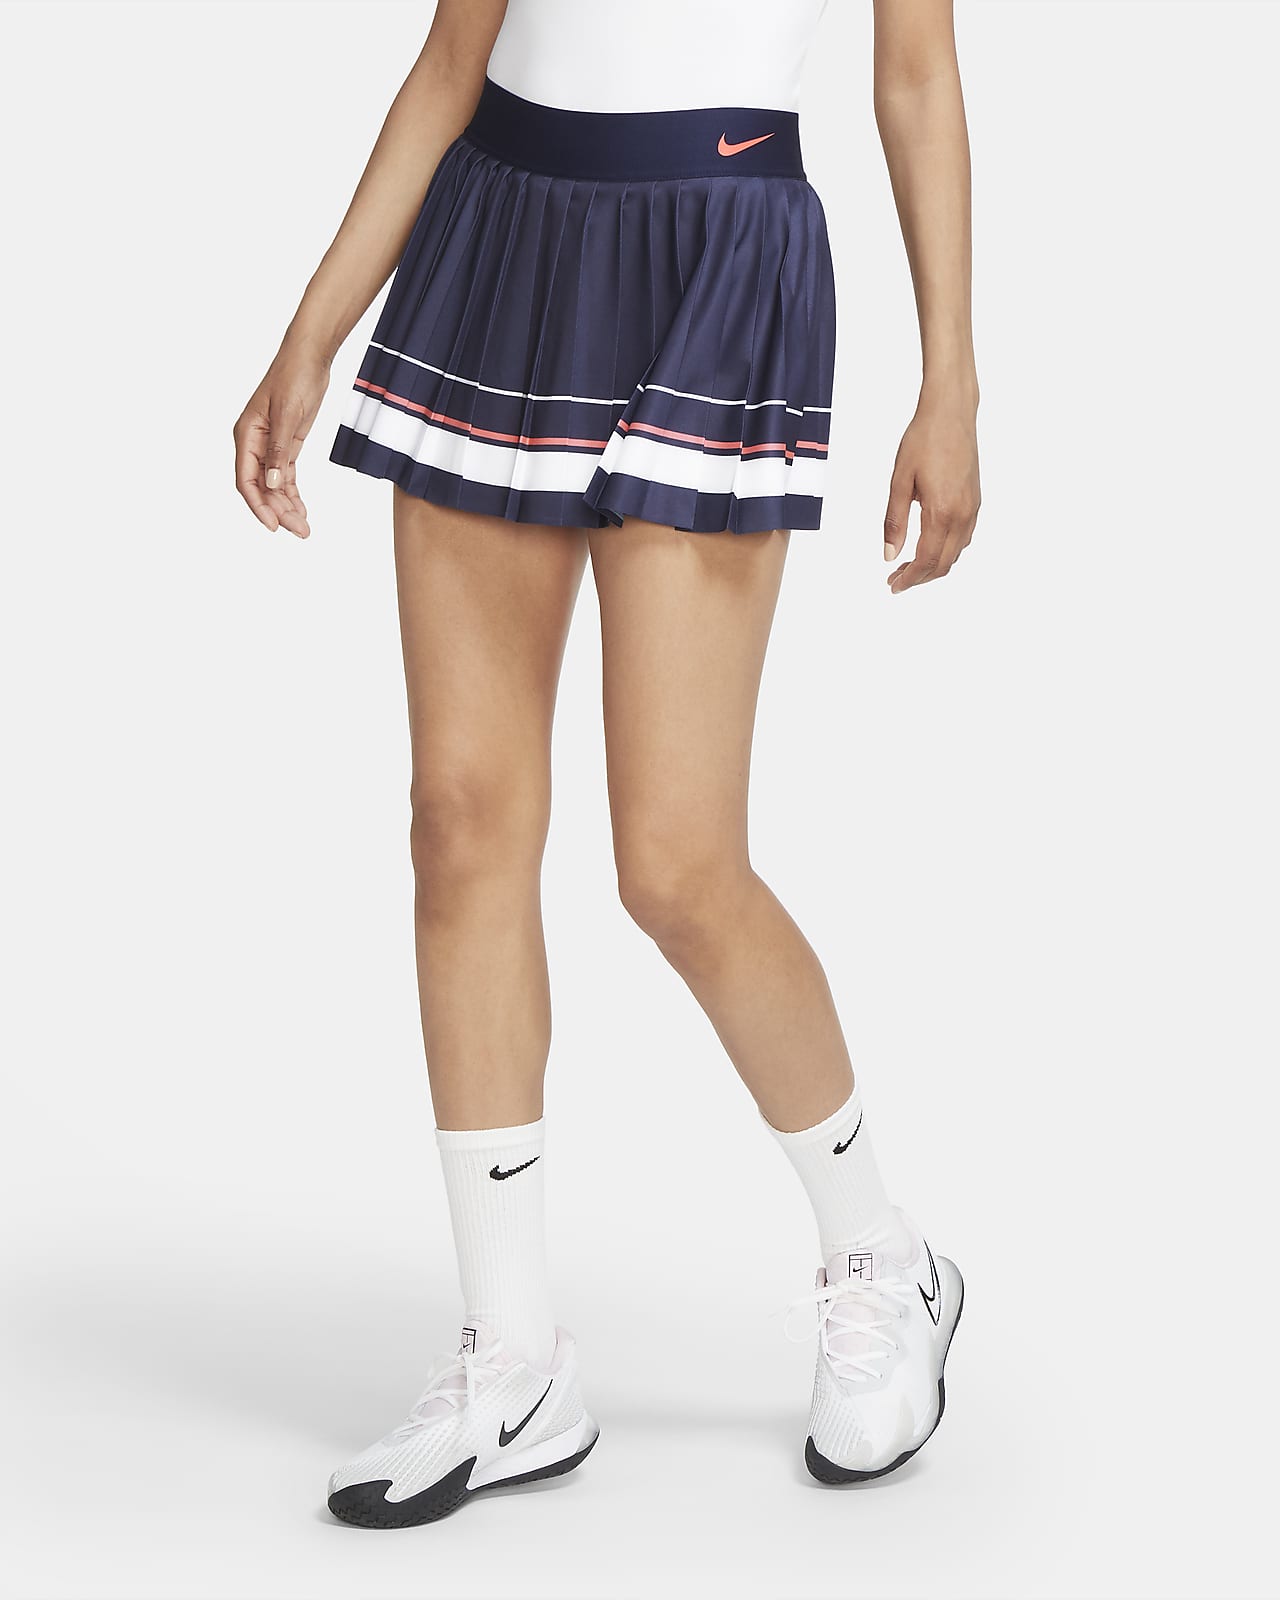 Maria Women's Tennis Skirt. Nike SA